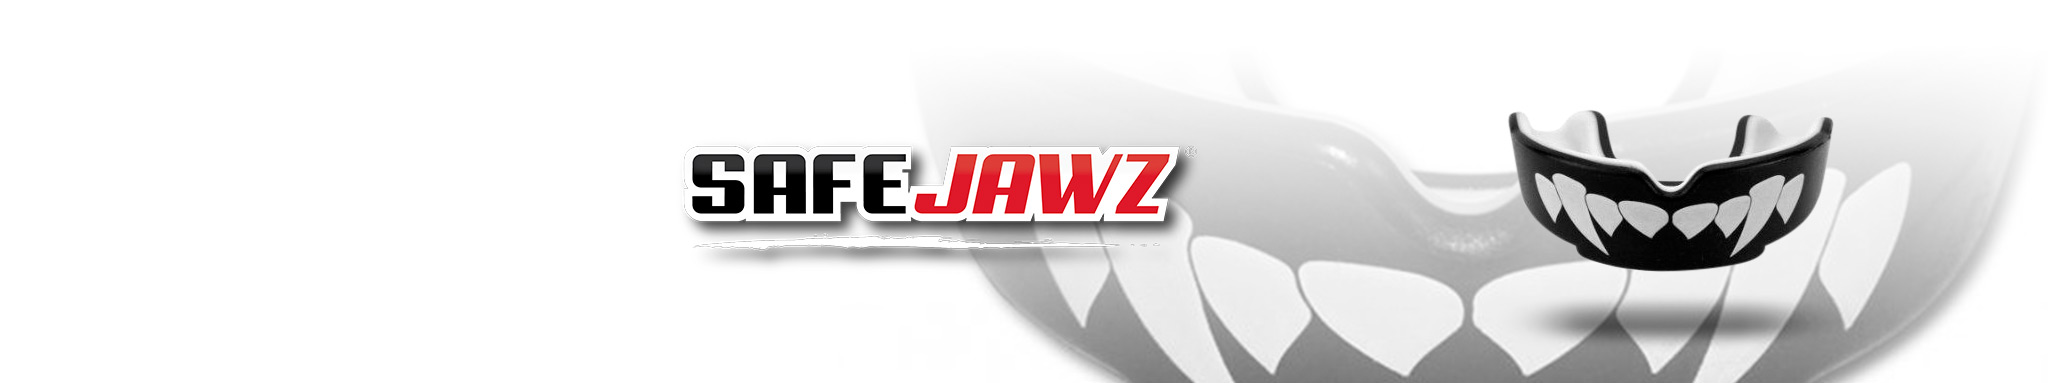 Safejawz : protège-dents de la marque Safejawz | Dragon Bleu